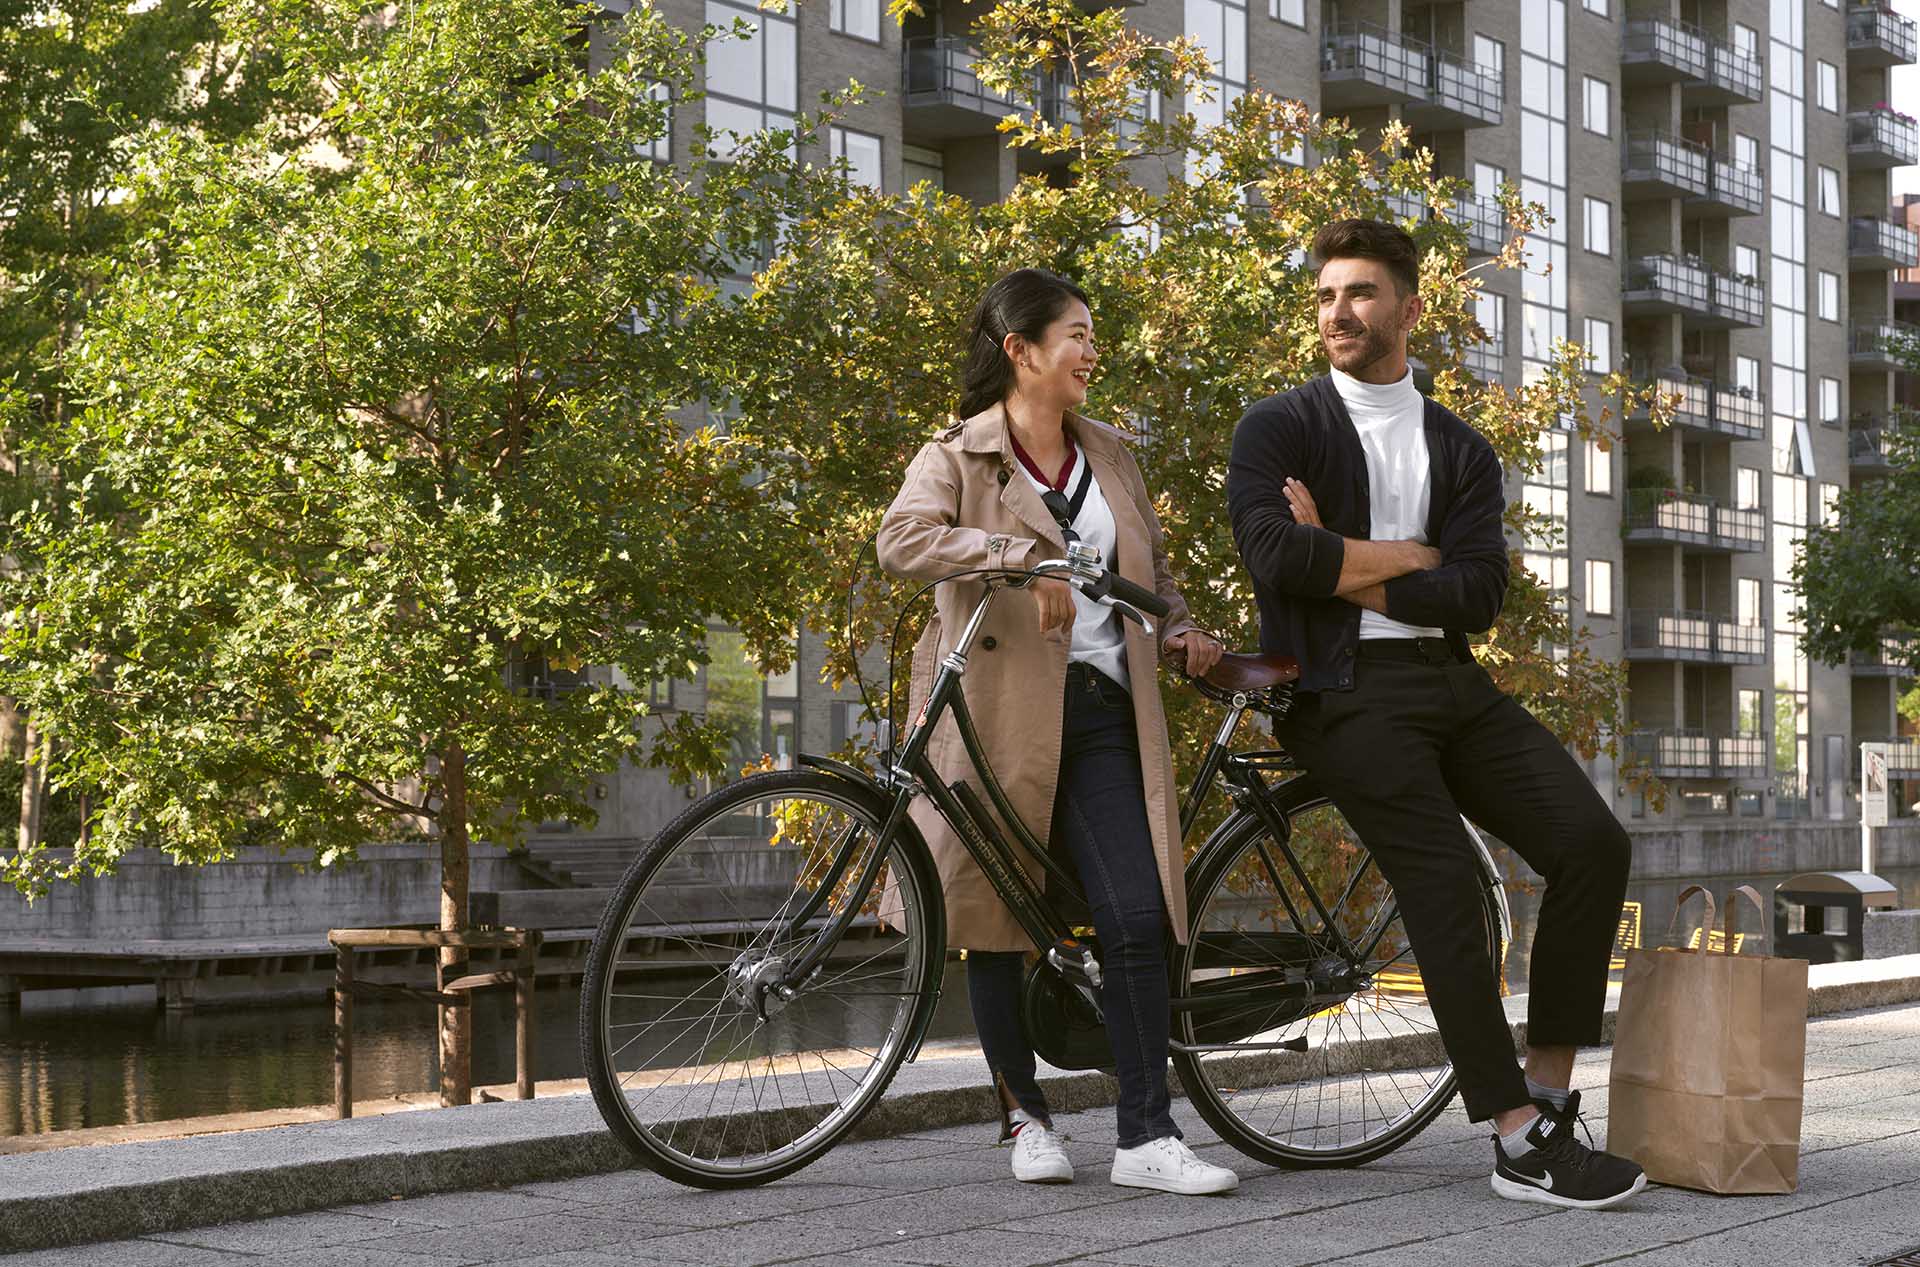 En kille och en tjej står lutade mot en cykel utomhus